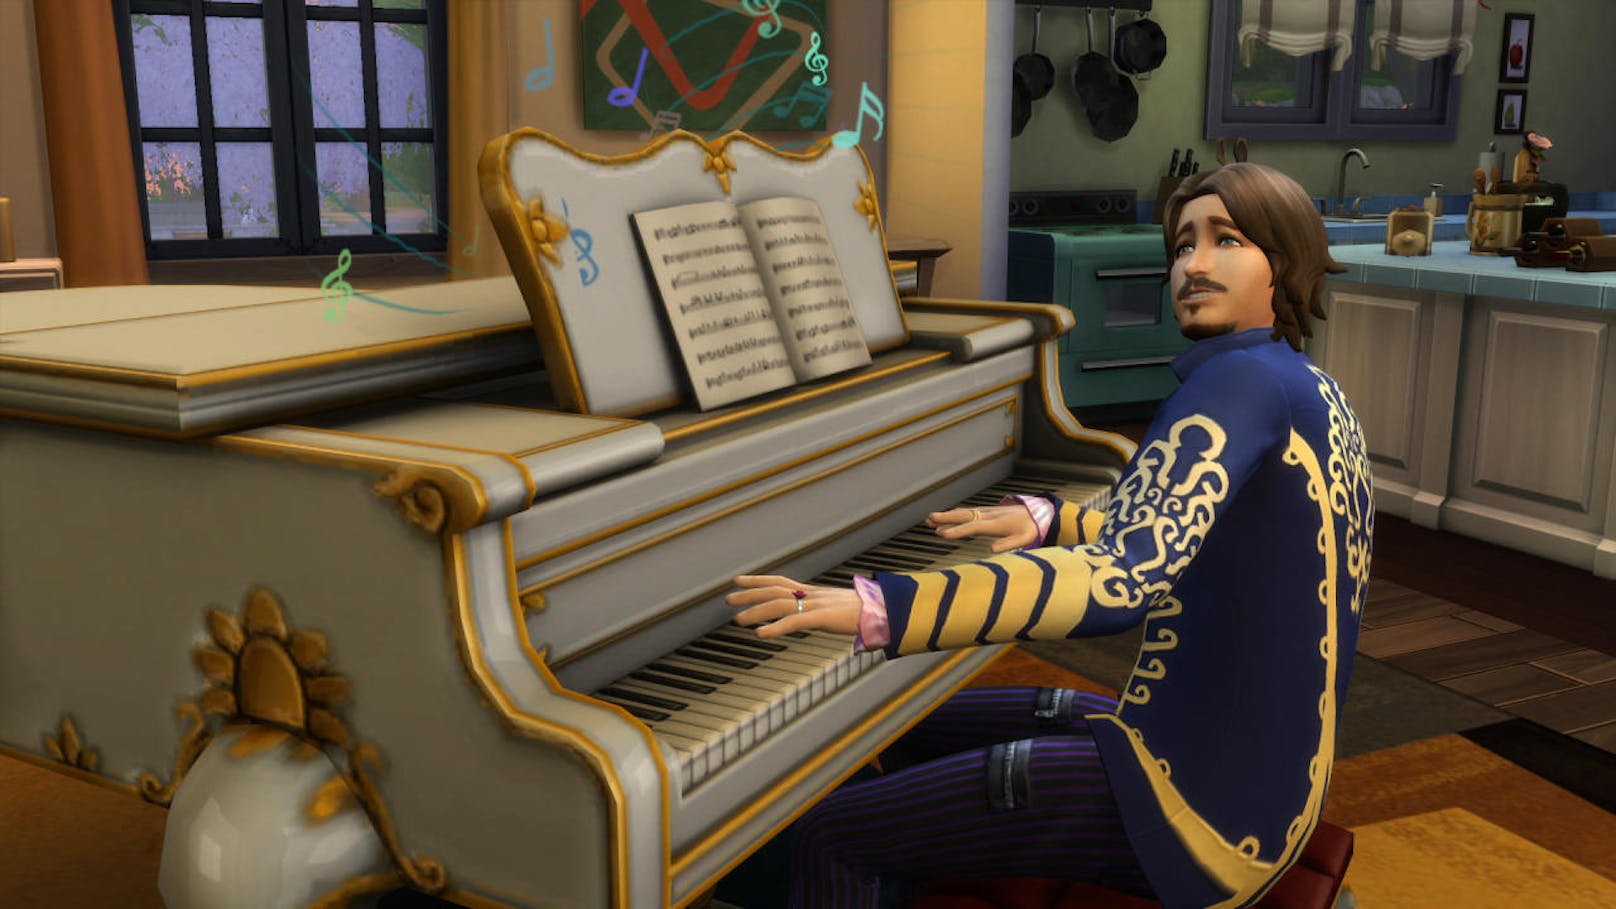 Sims 4 erscheinen nun endlich auch auf der Konsole - was uns das Leben oftmals schwer macht.